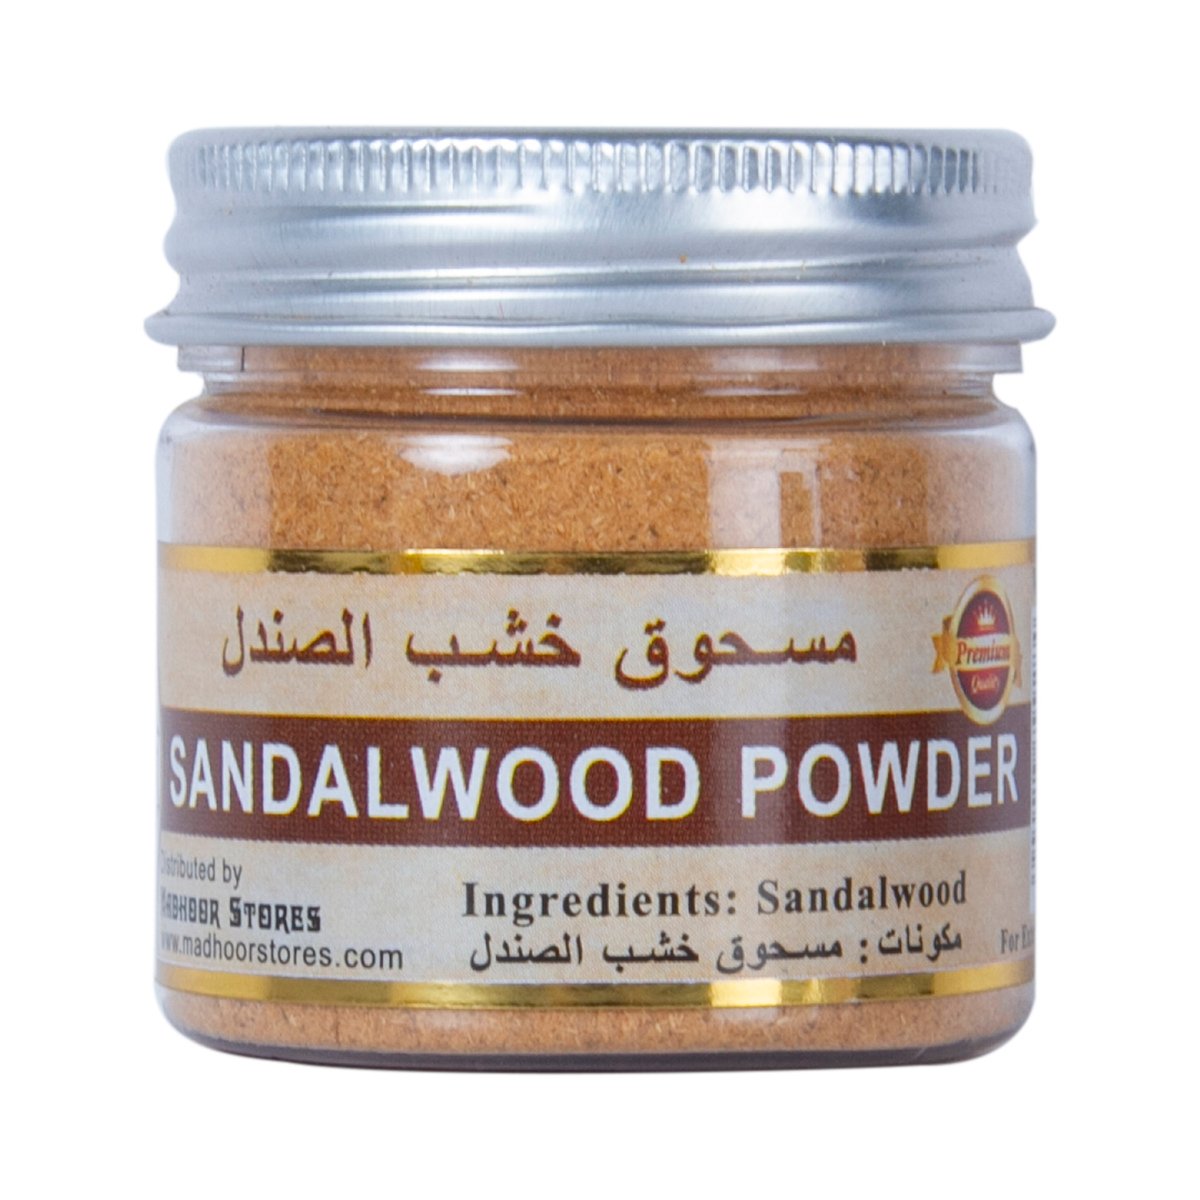 Buy Madhoor Sandalwood Powder 40 g Online at Best Price | Other Skin Care | Lulu UAE in UAE